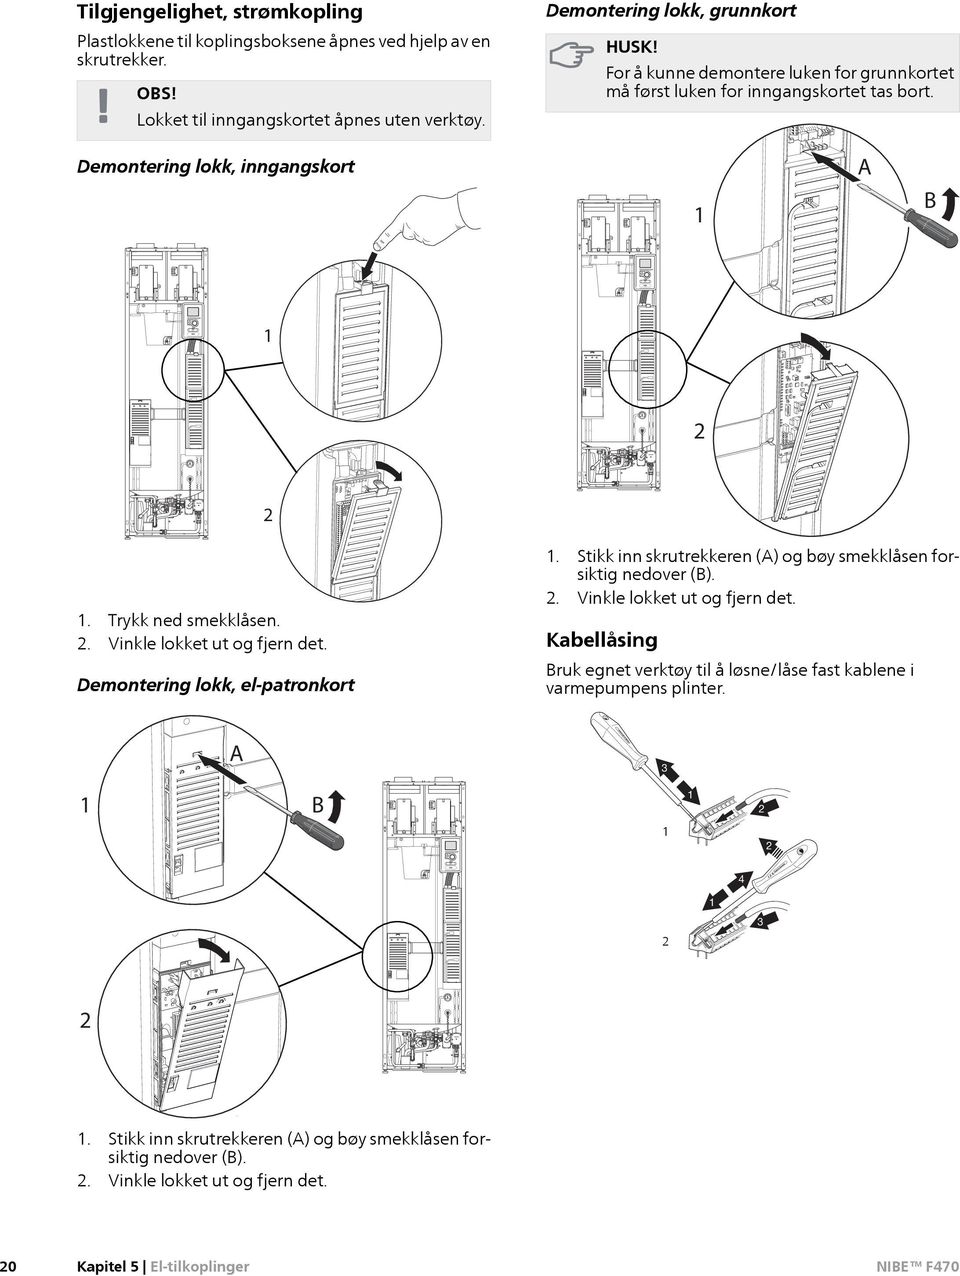 Demontering lokk, el-patronkort 1. Stikk inn skrutrekkeren (A) og bøy smekklåsen forsiktig nedover (B). 2. Vinkle lokket ut og fjern det.